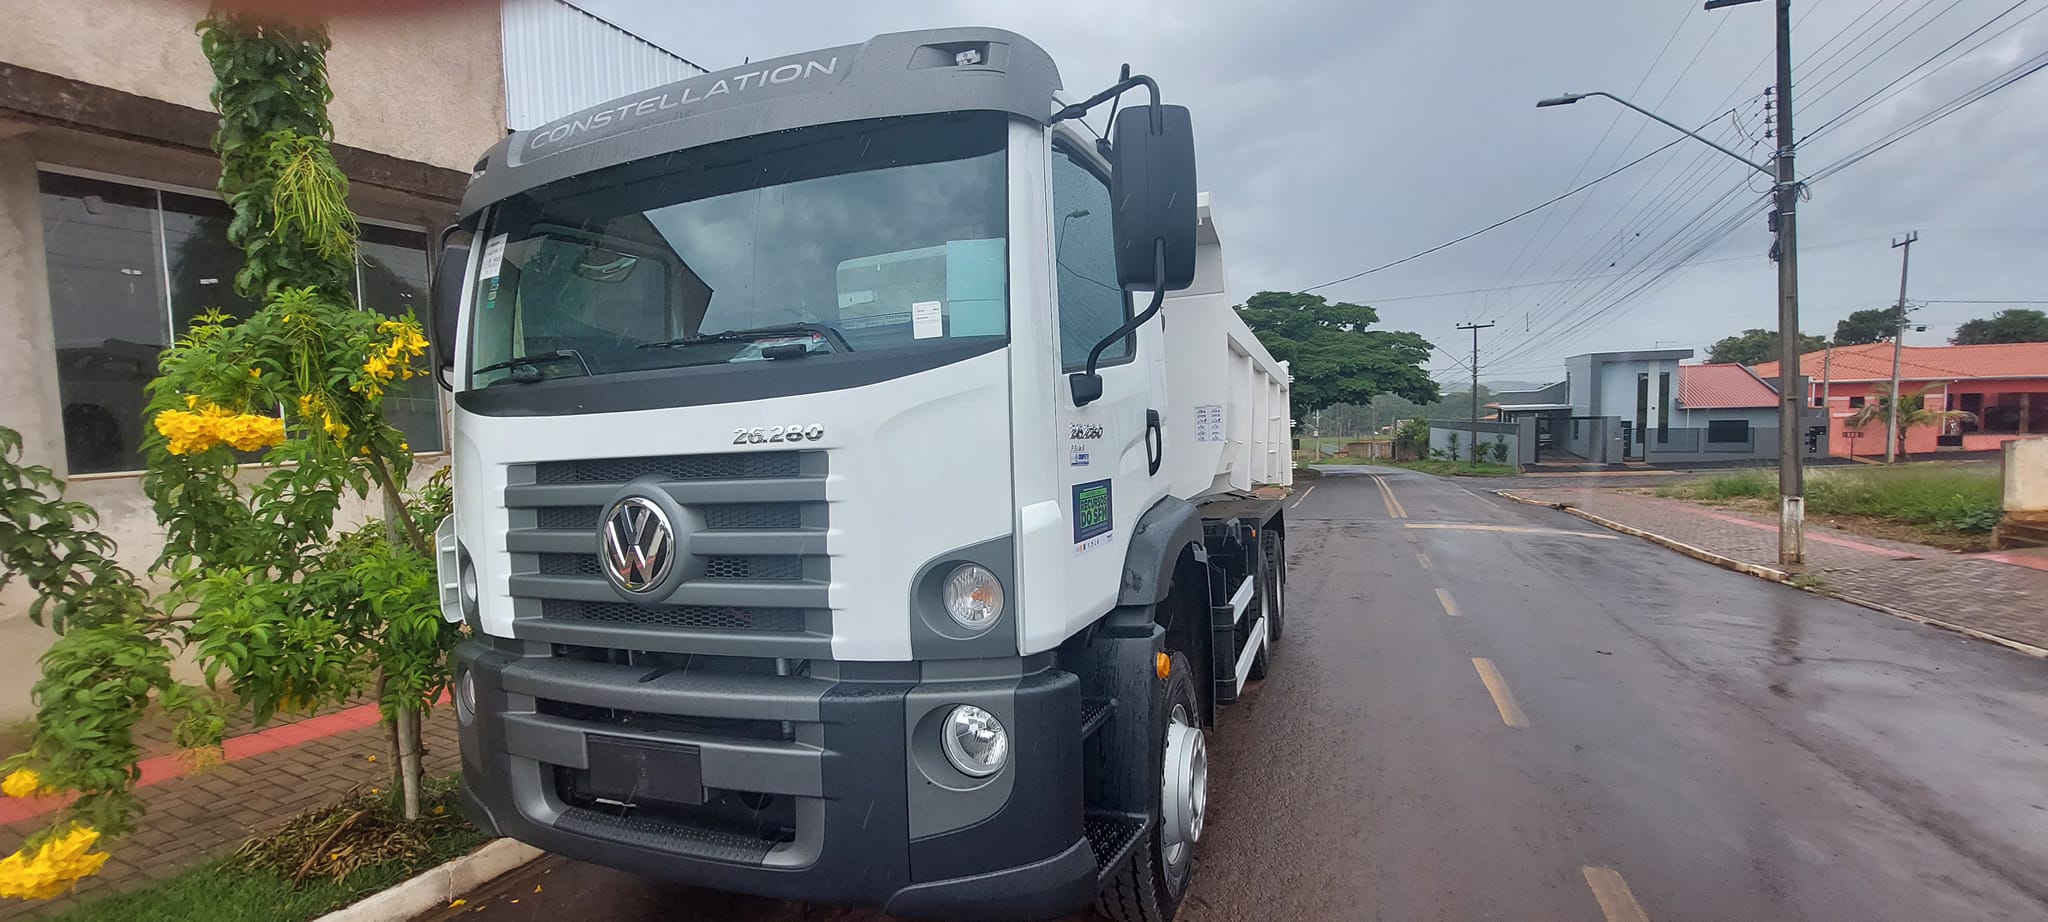 Administração pública de Ariranha adquire mais dois novos caminhões